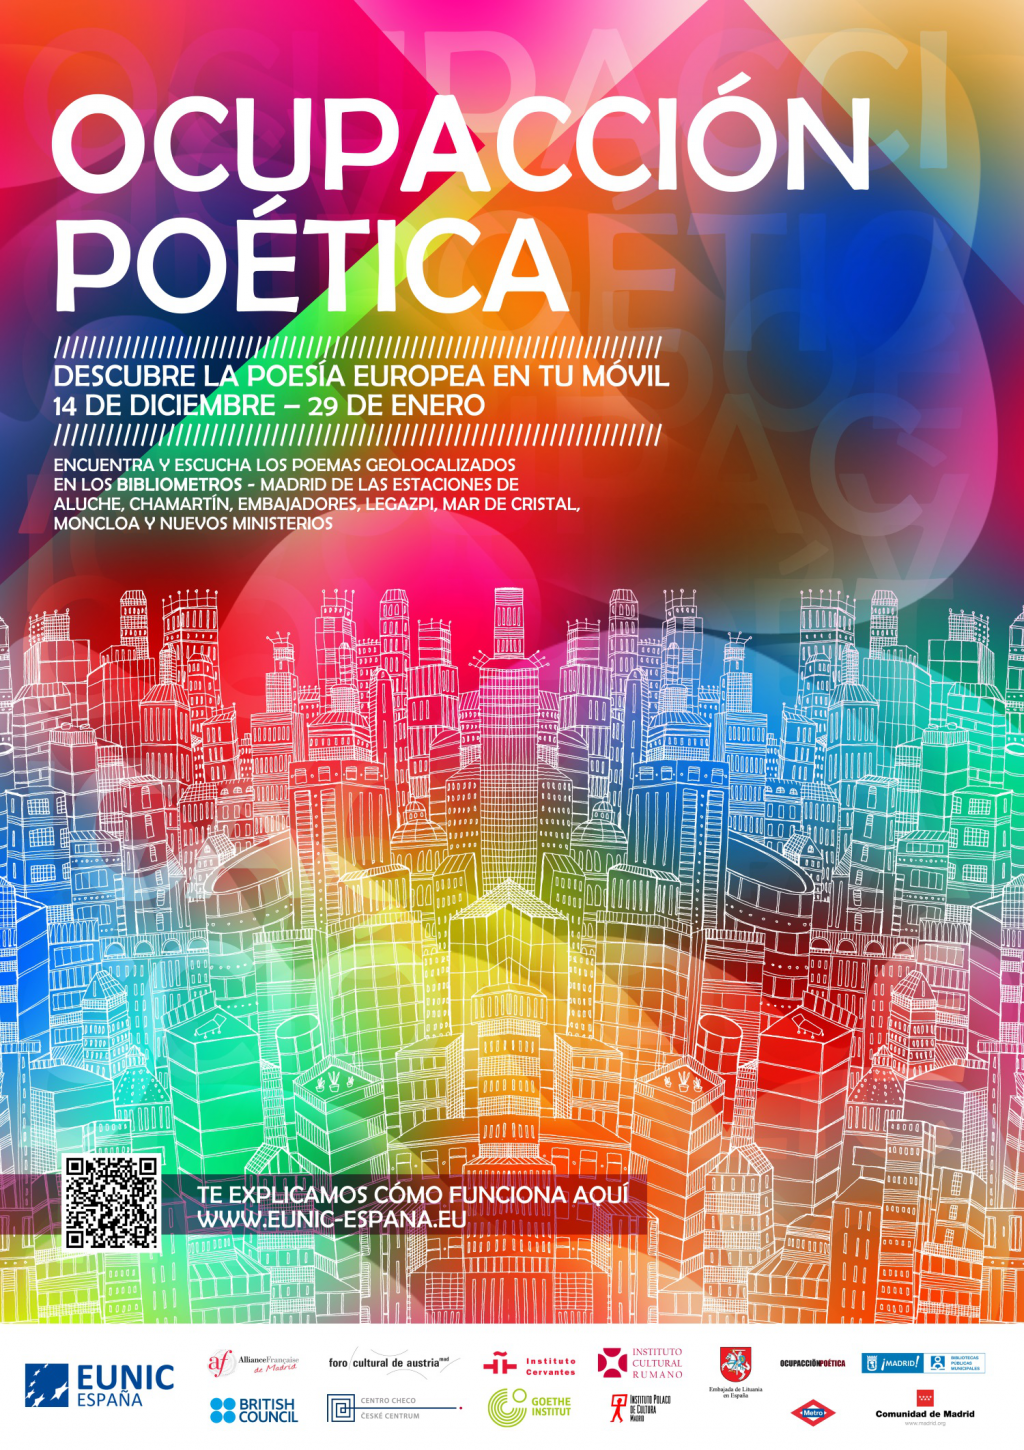 EUNIC-España-Ocupación-poética-descubre-la-poesía-europea-a-través-de-las-nuevas-tecnologías-1